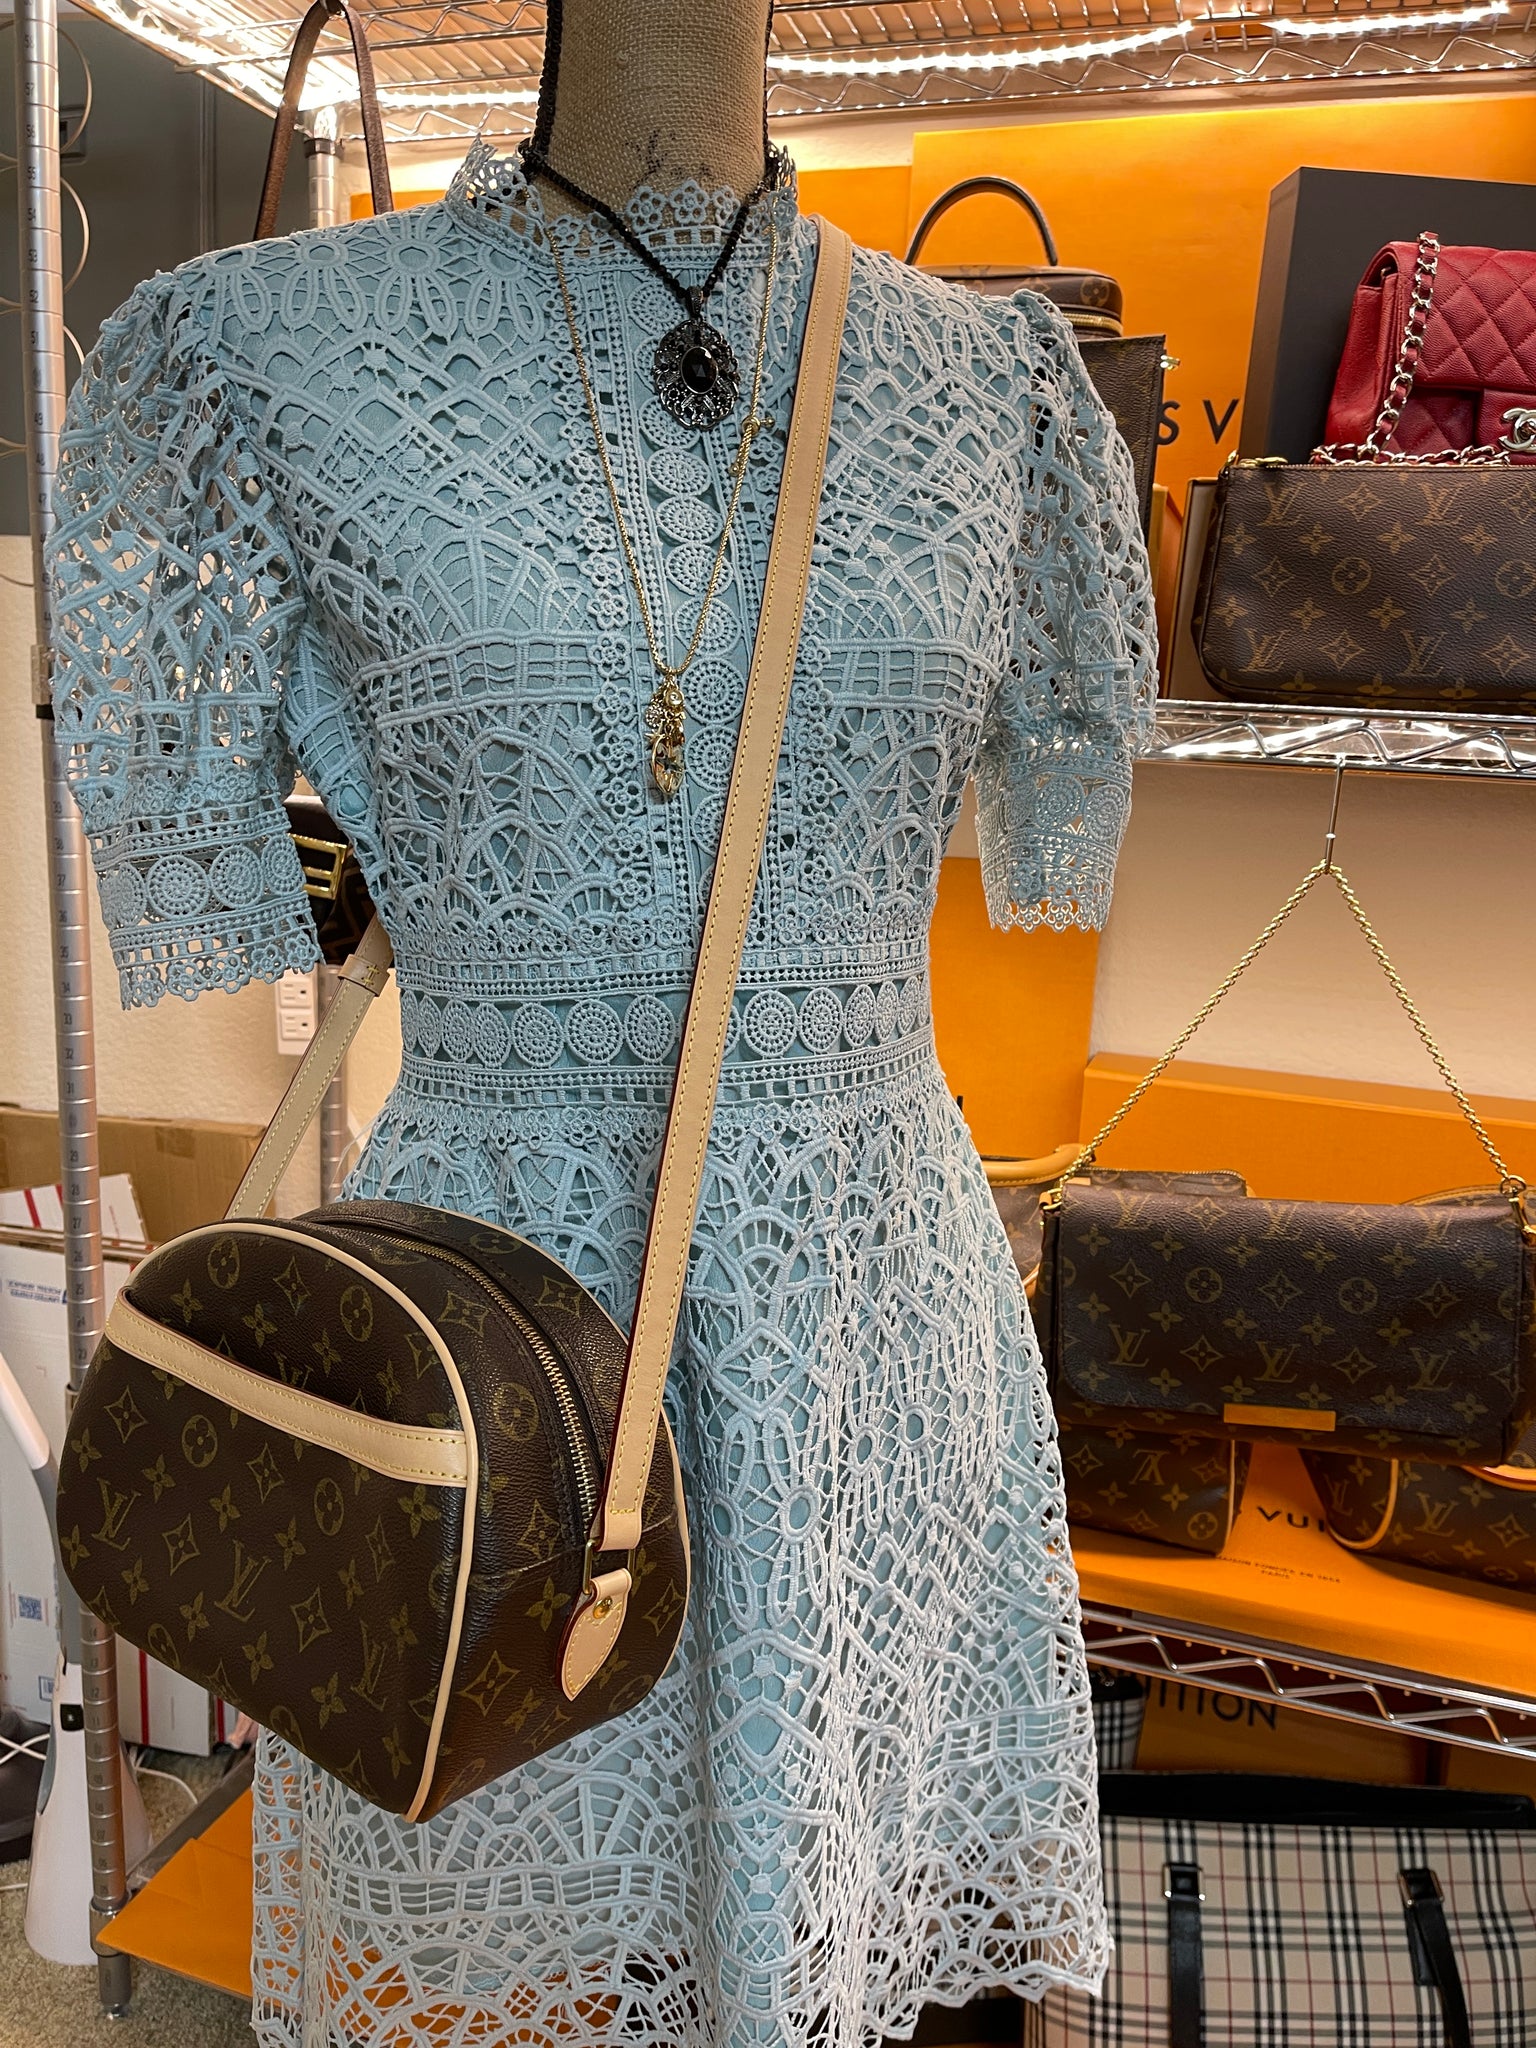 LV Blois Apple Bag Authentic Louis Vuitton sling bag, Luxury, Bags